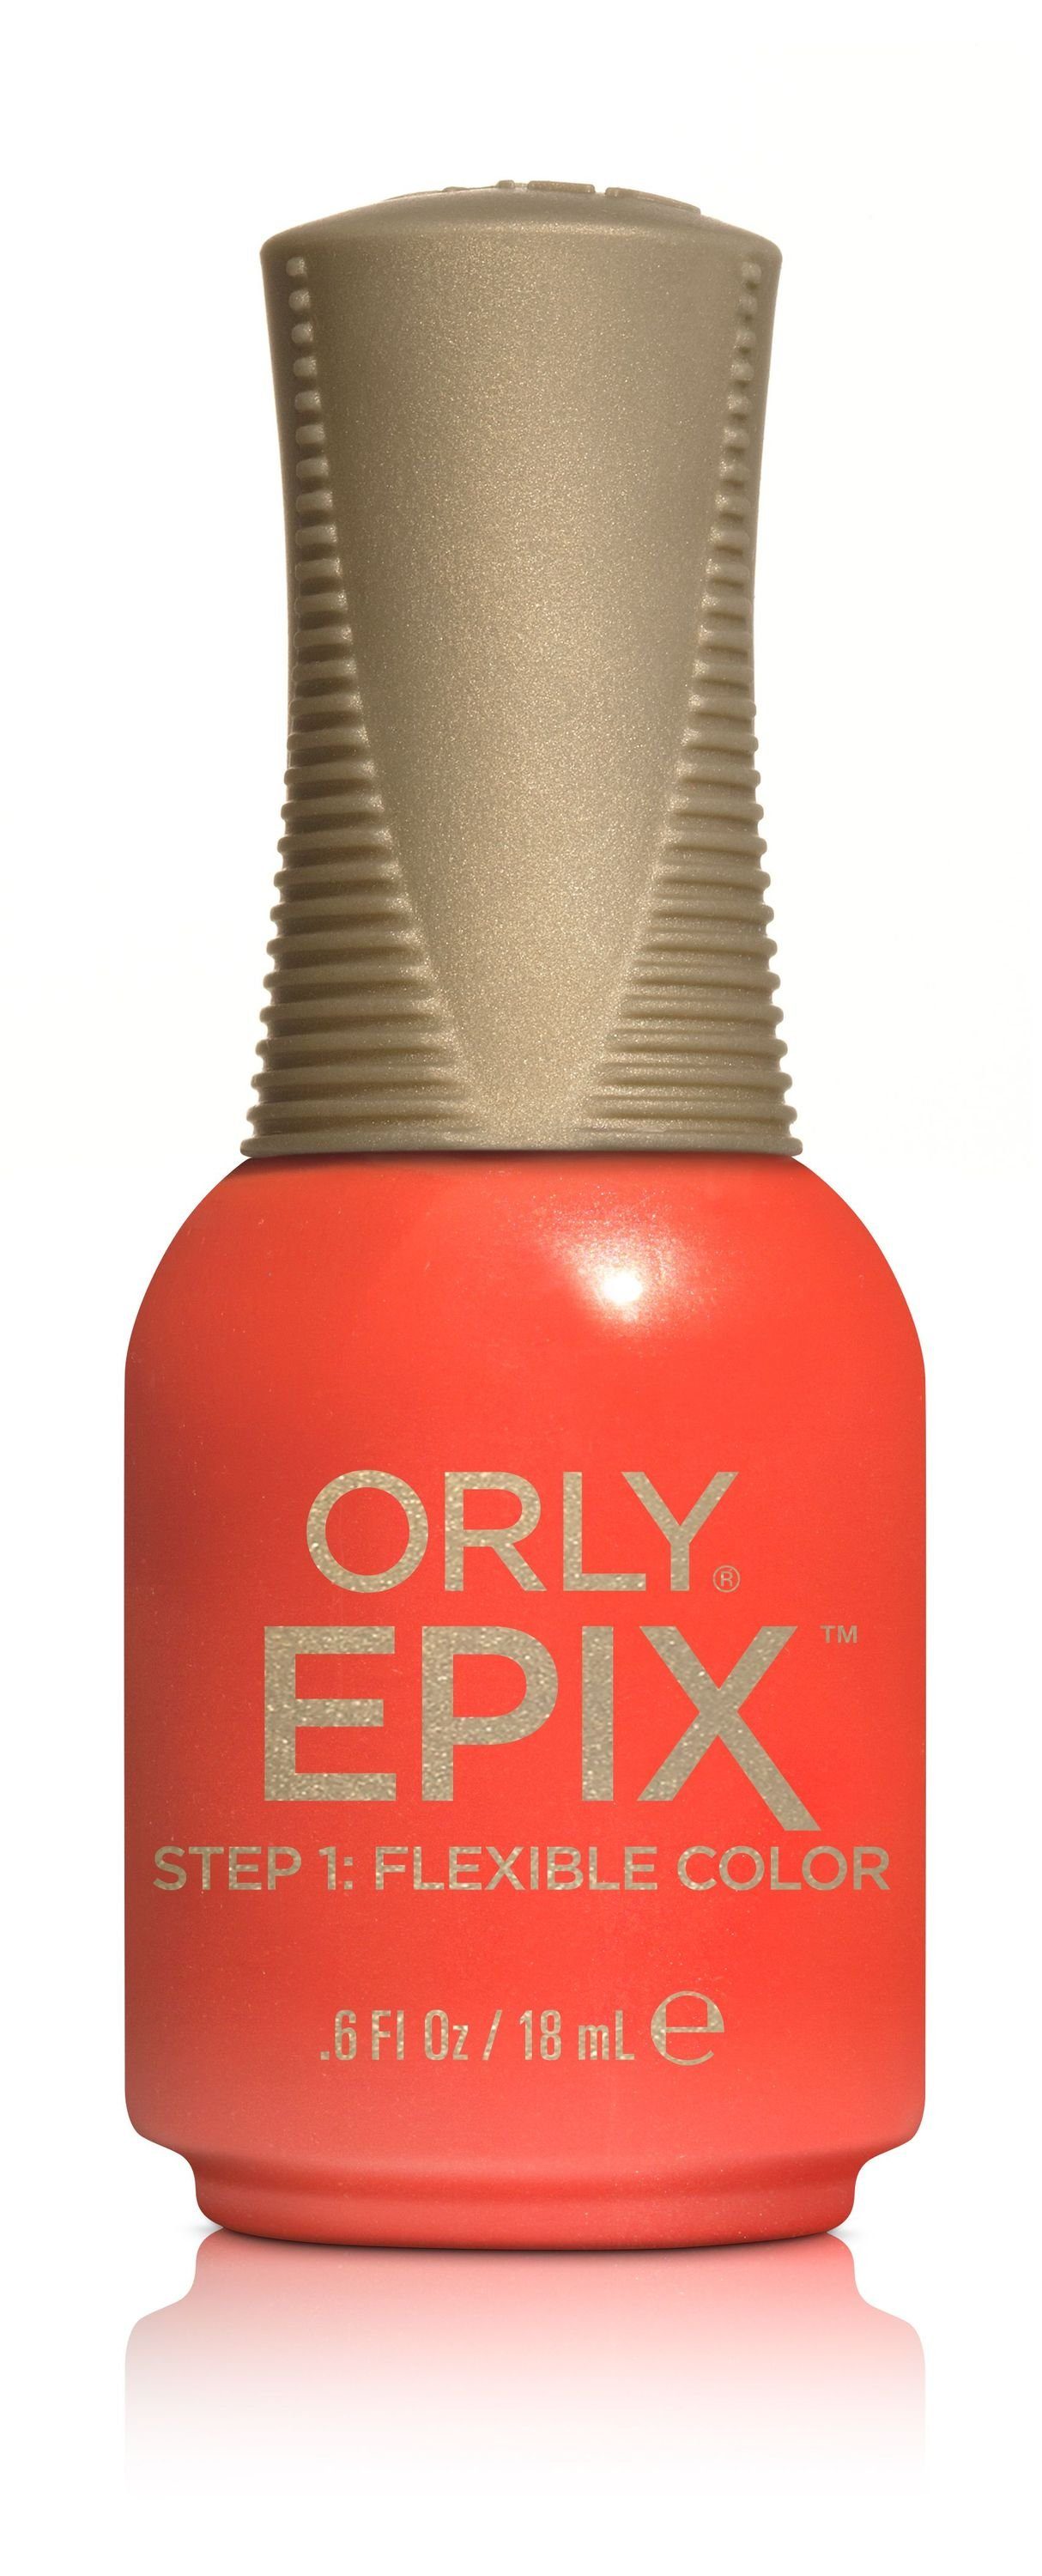 ORLY Nagellack ORLY - EPIX Flexible Color - Improv, 18 ML